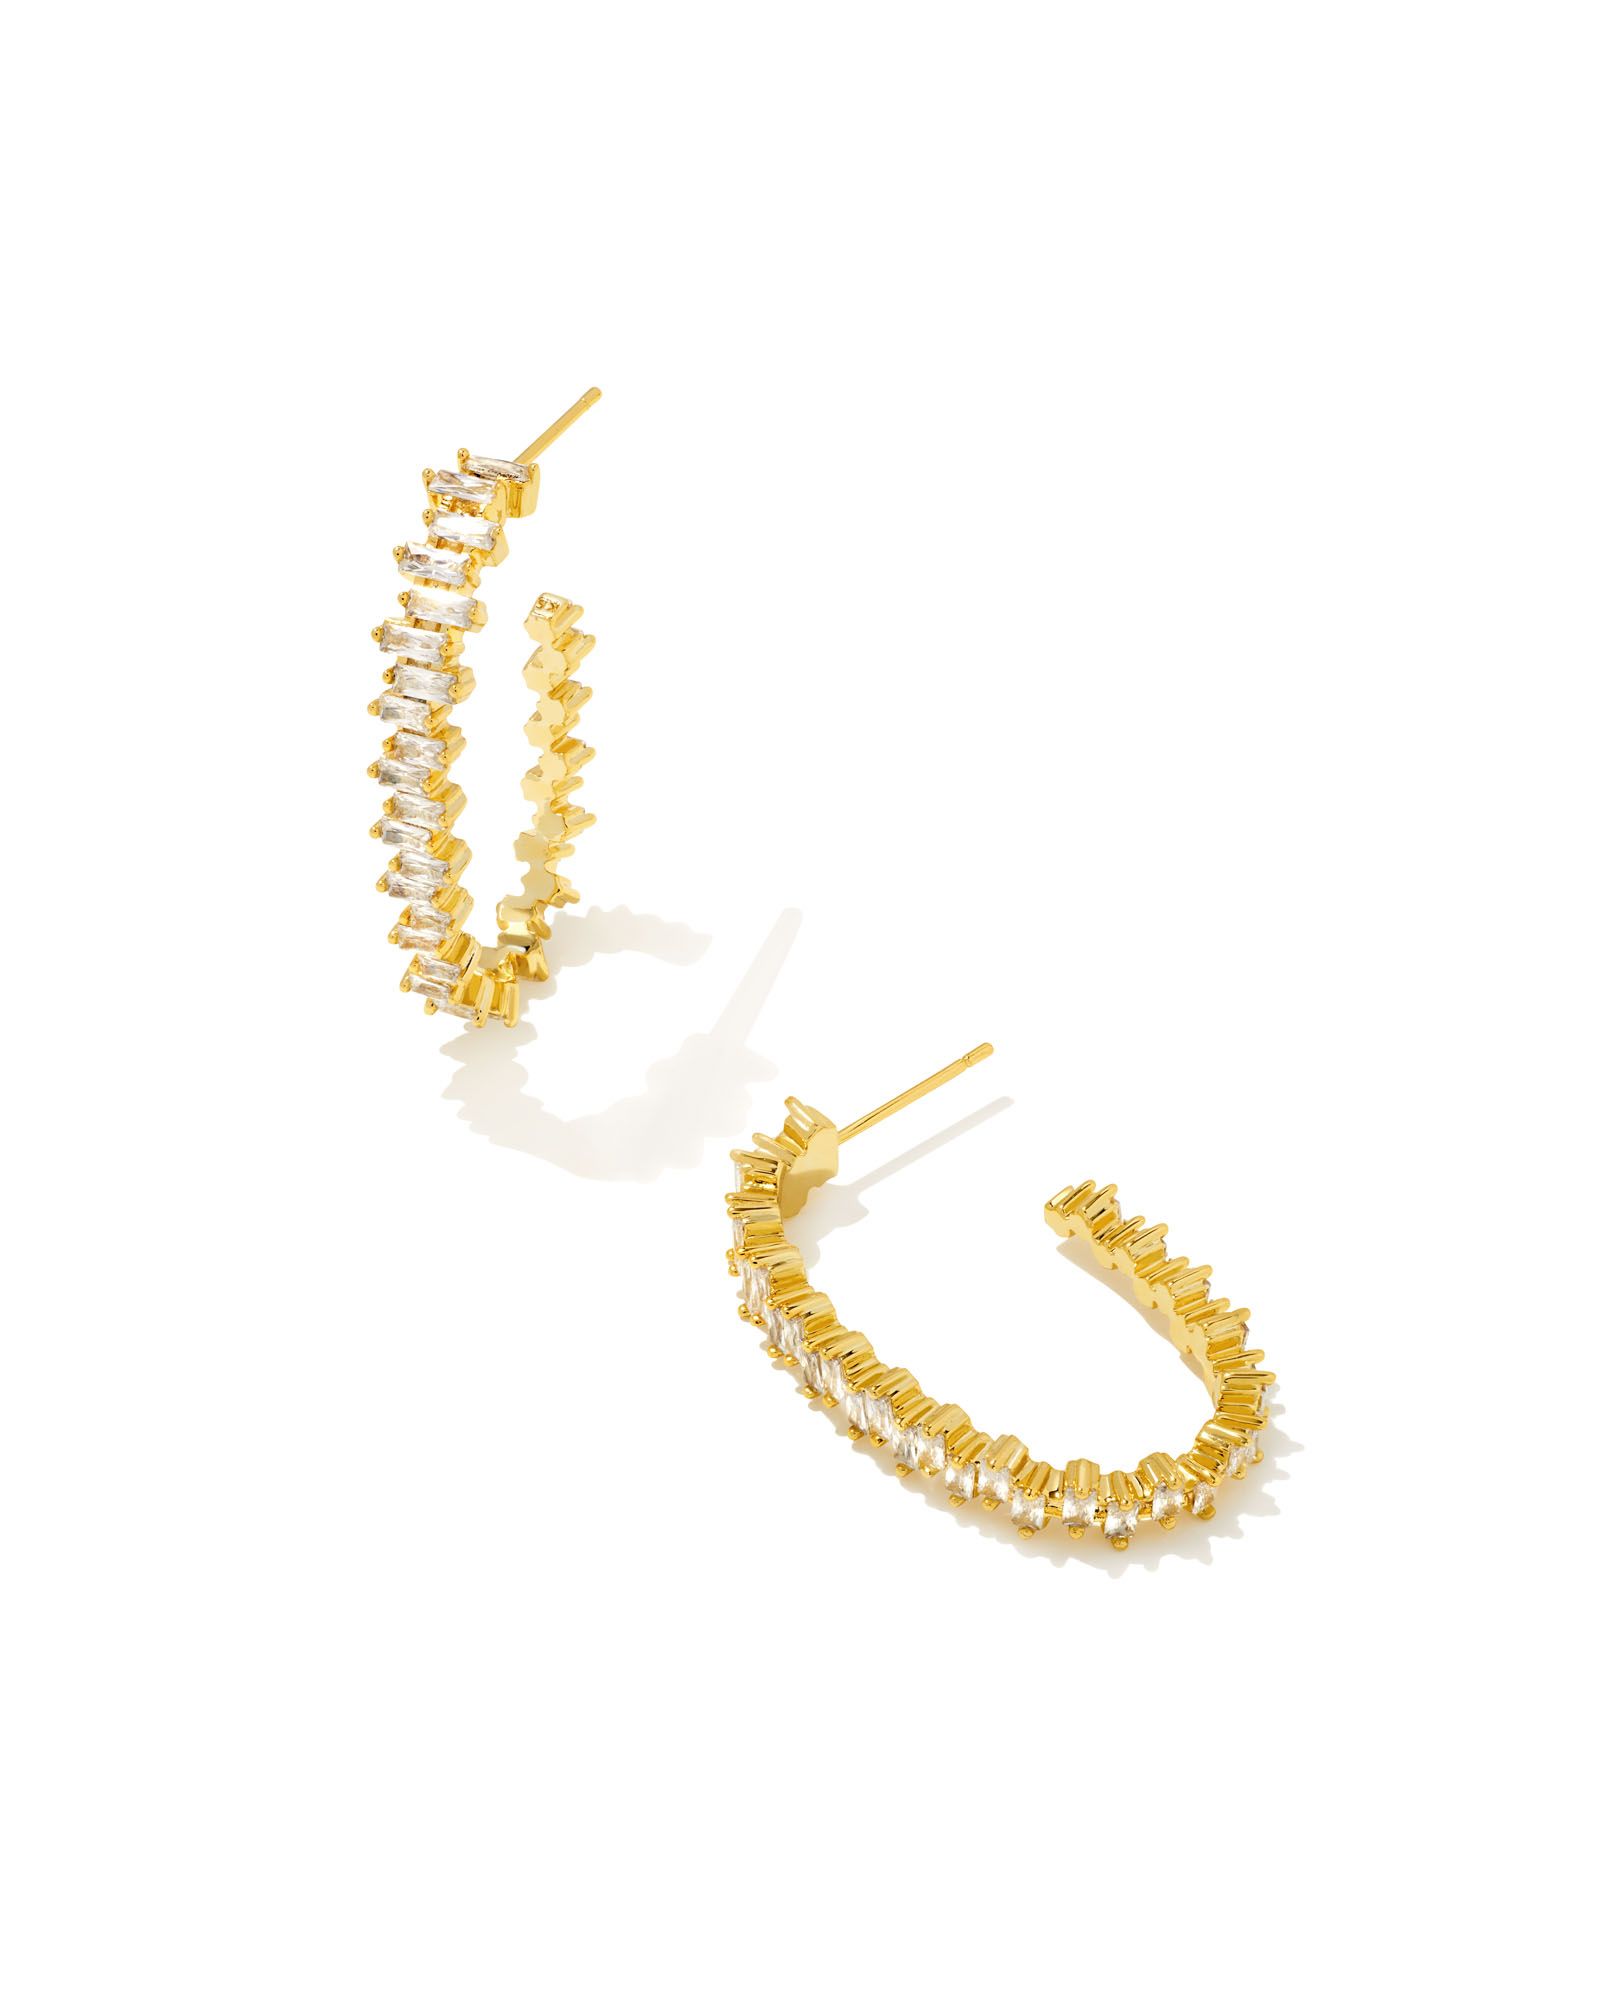 Juliette Gold Oval Hoop Earrings in White Crystal | Kendra Scott